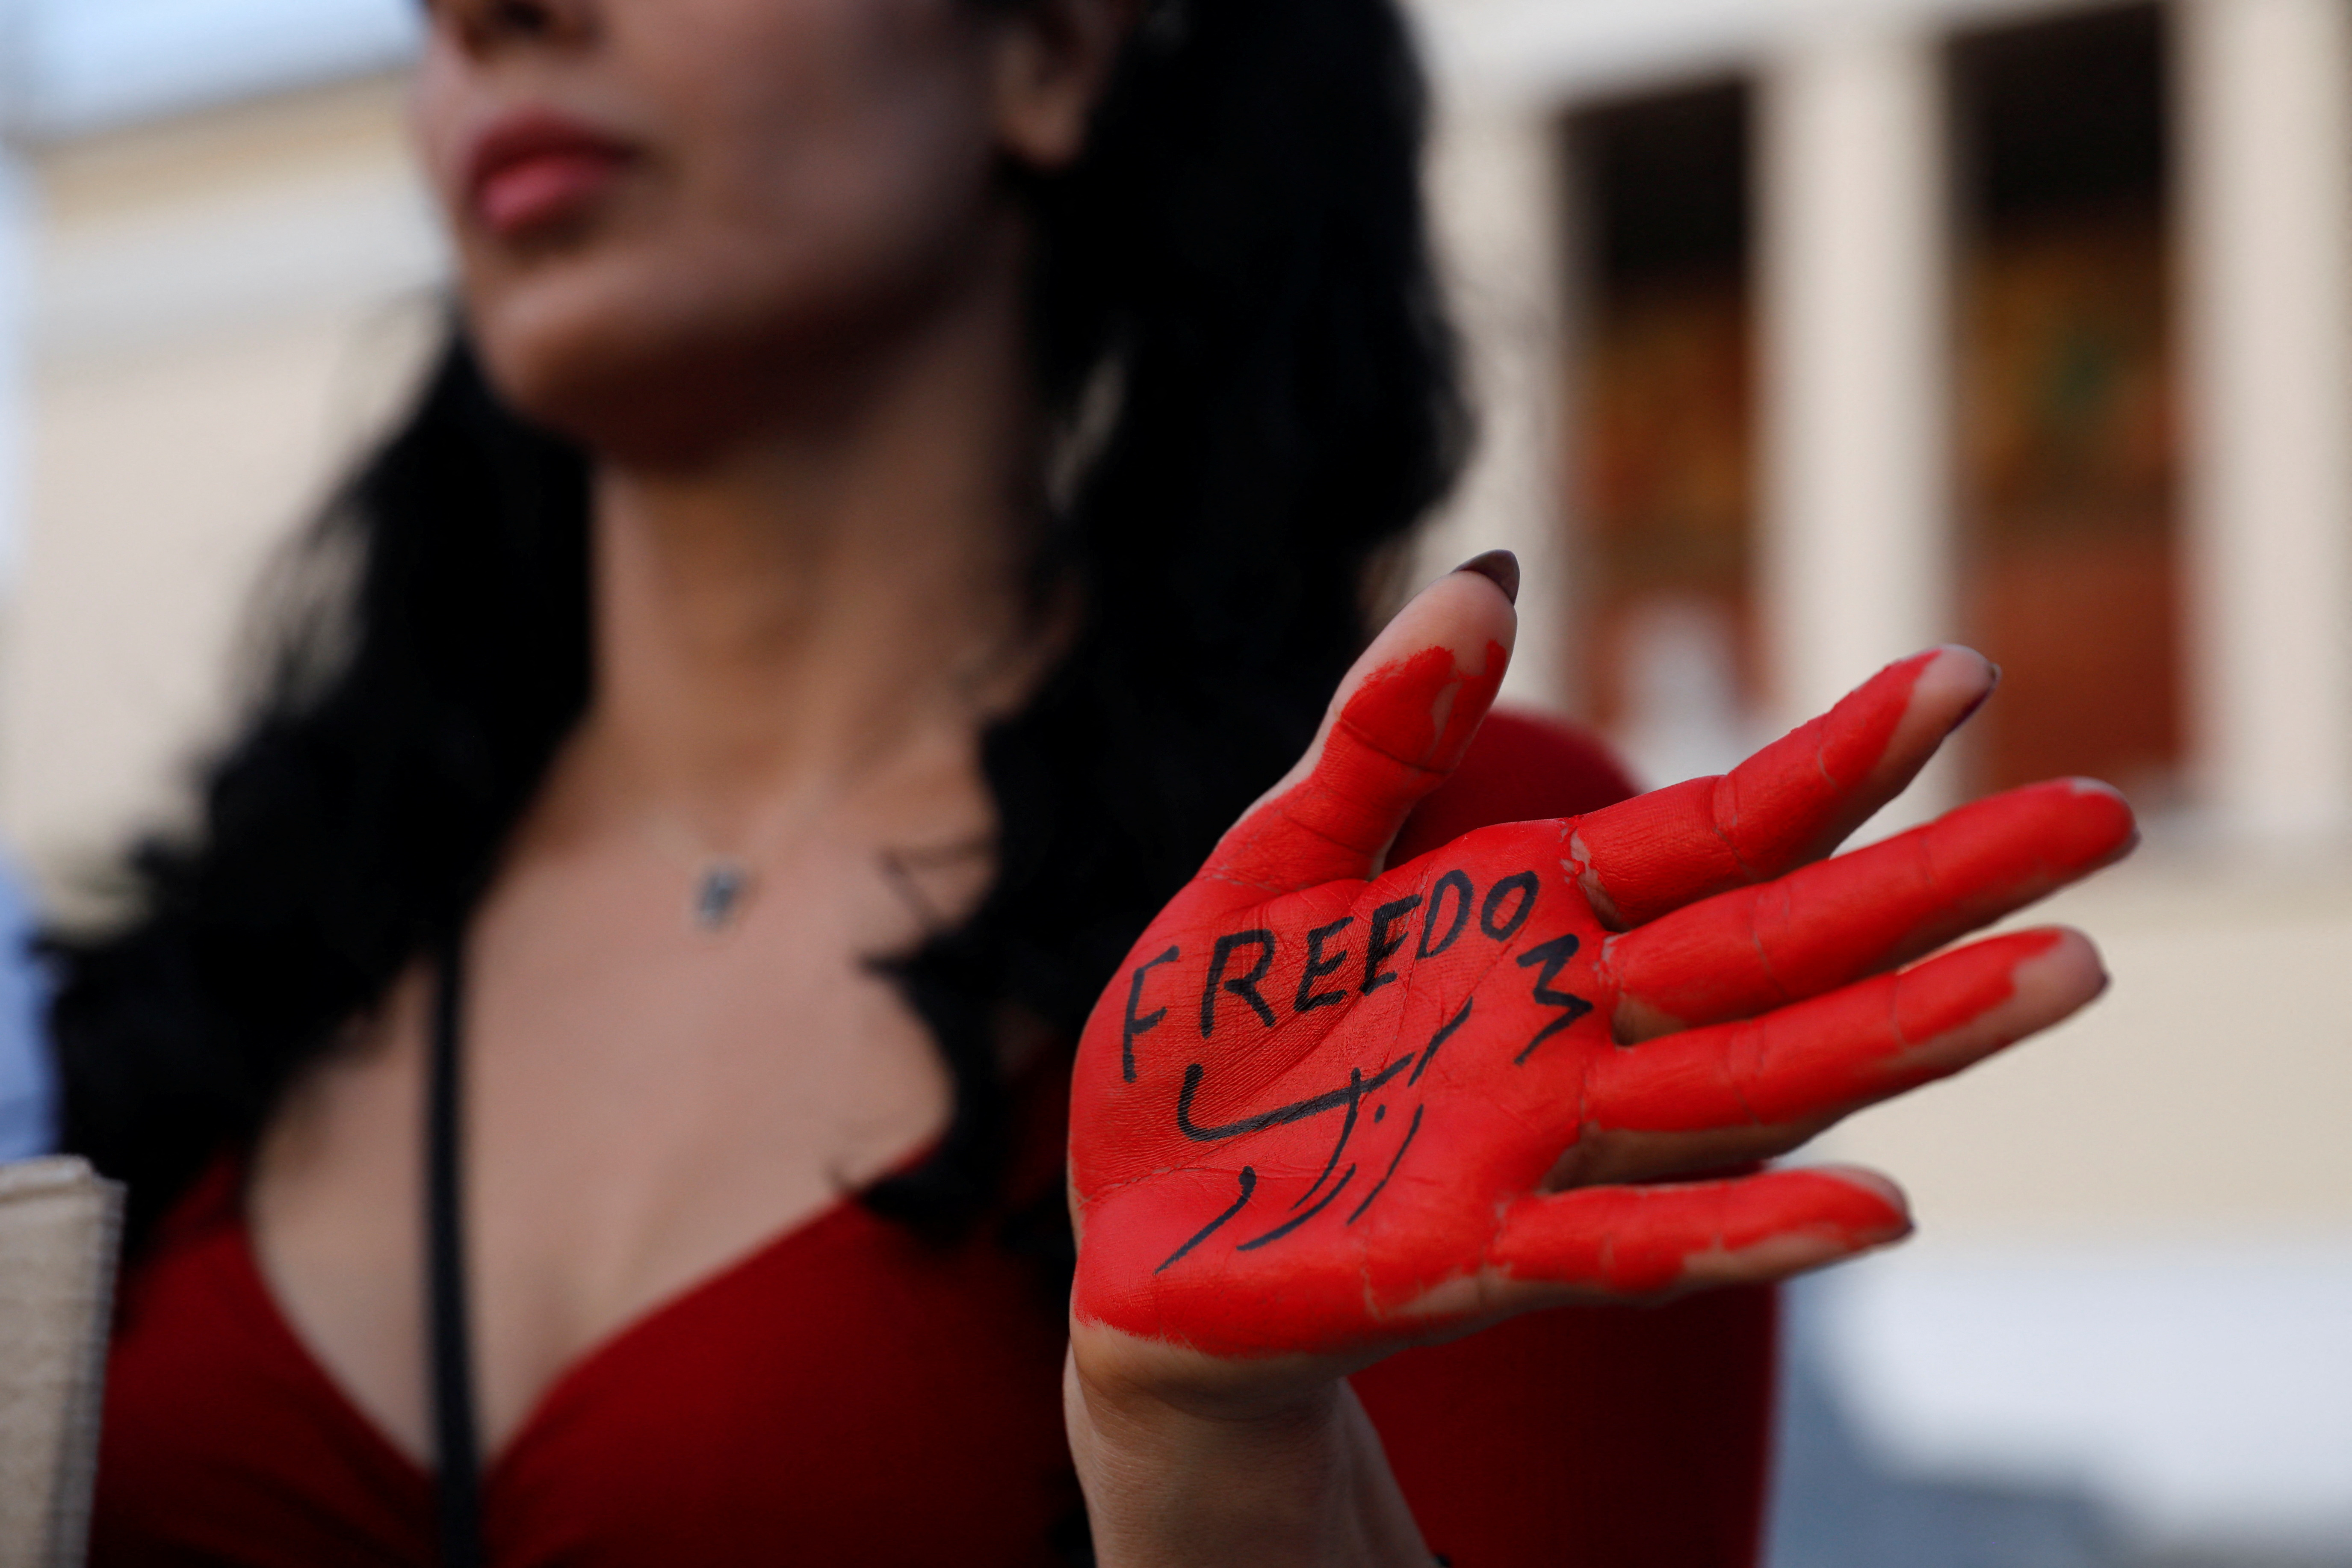 Una mujer con la palabra "Libertad" pintada a mano participa en una protesta tras la muerte de Mahsa Amini, en Atenas, Grecia, el 1 de octubre de 2022. REUTERS/Costas Baltas
